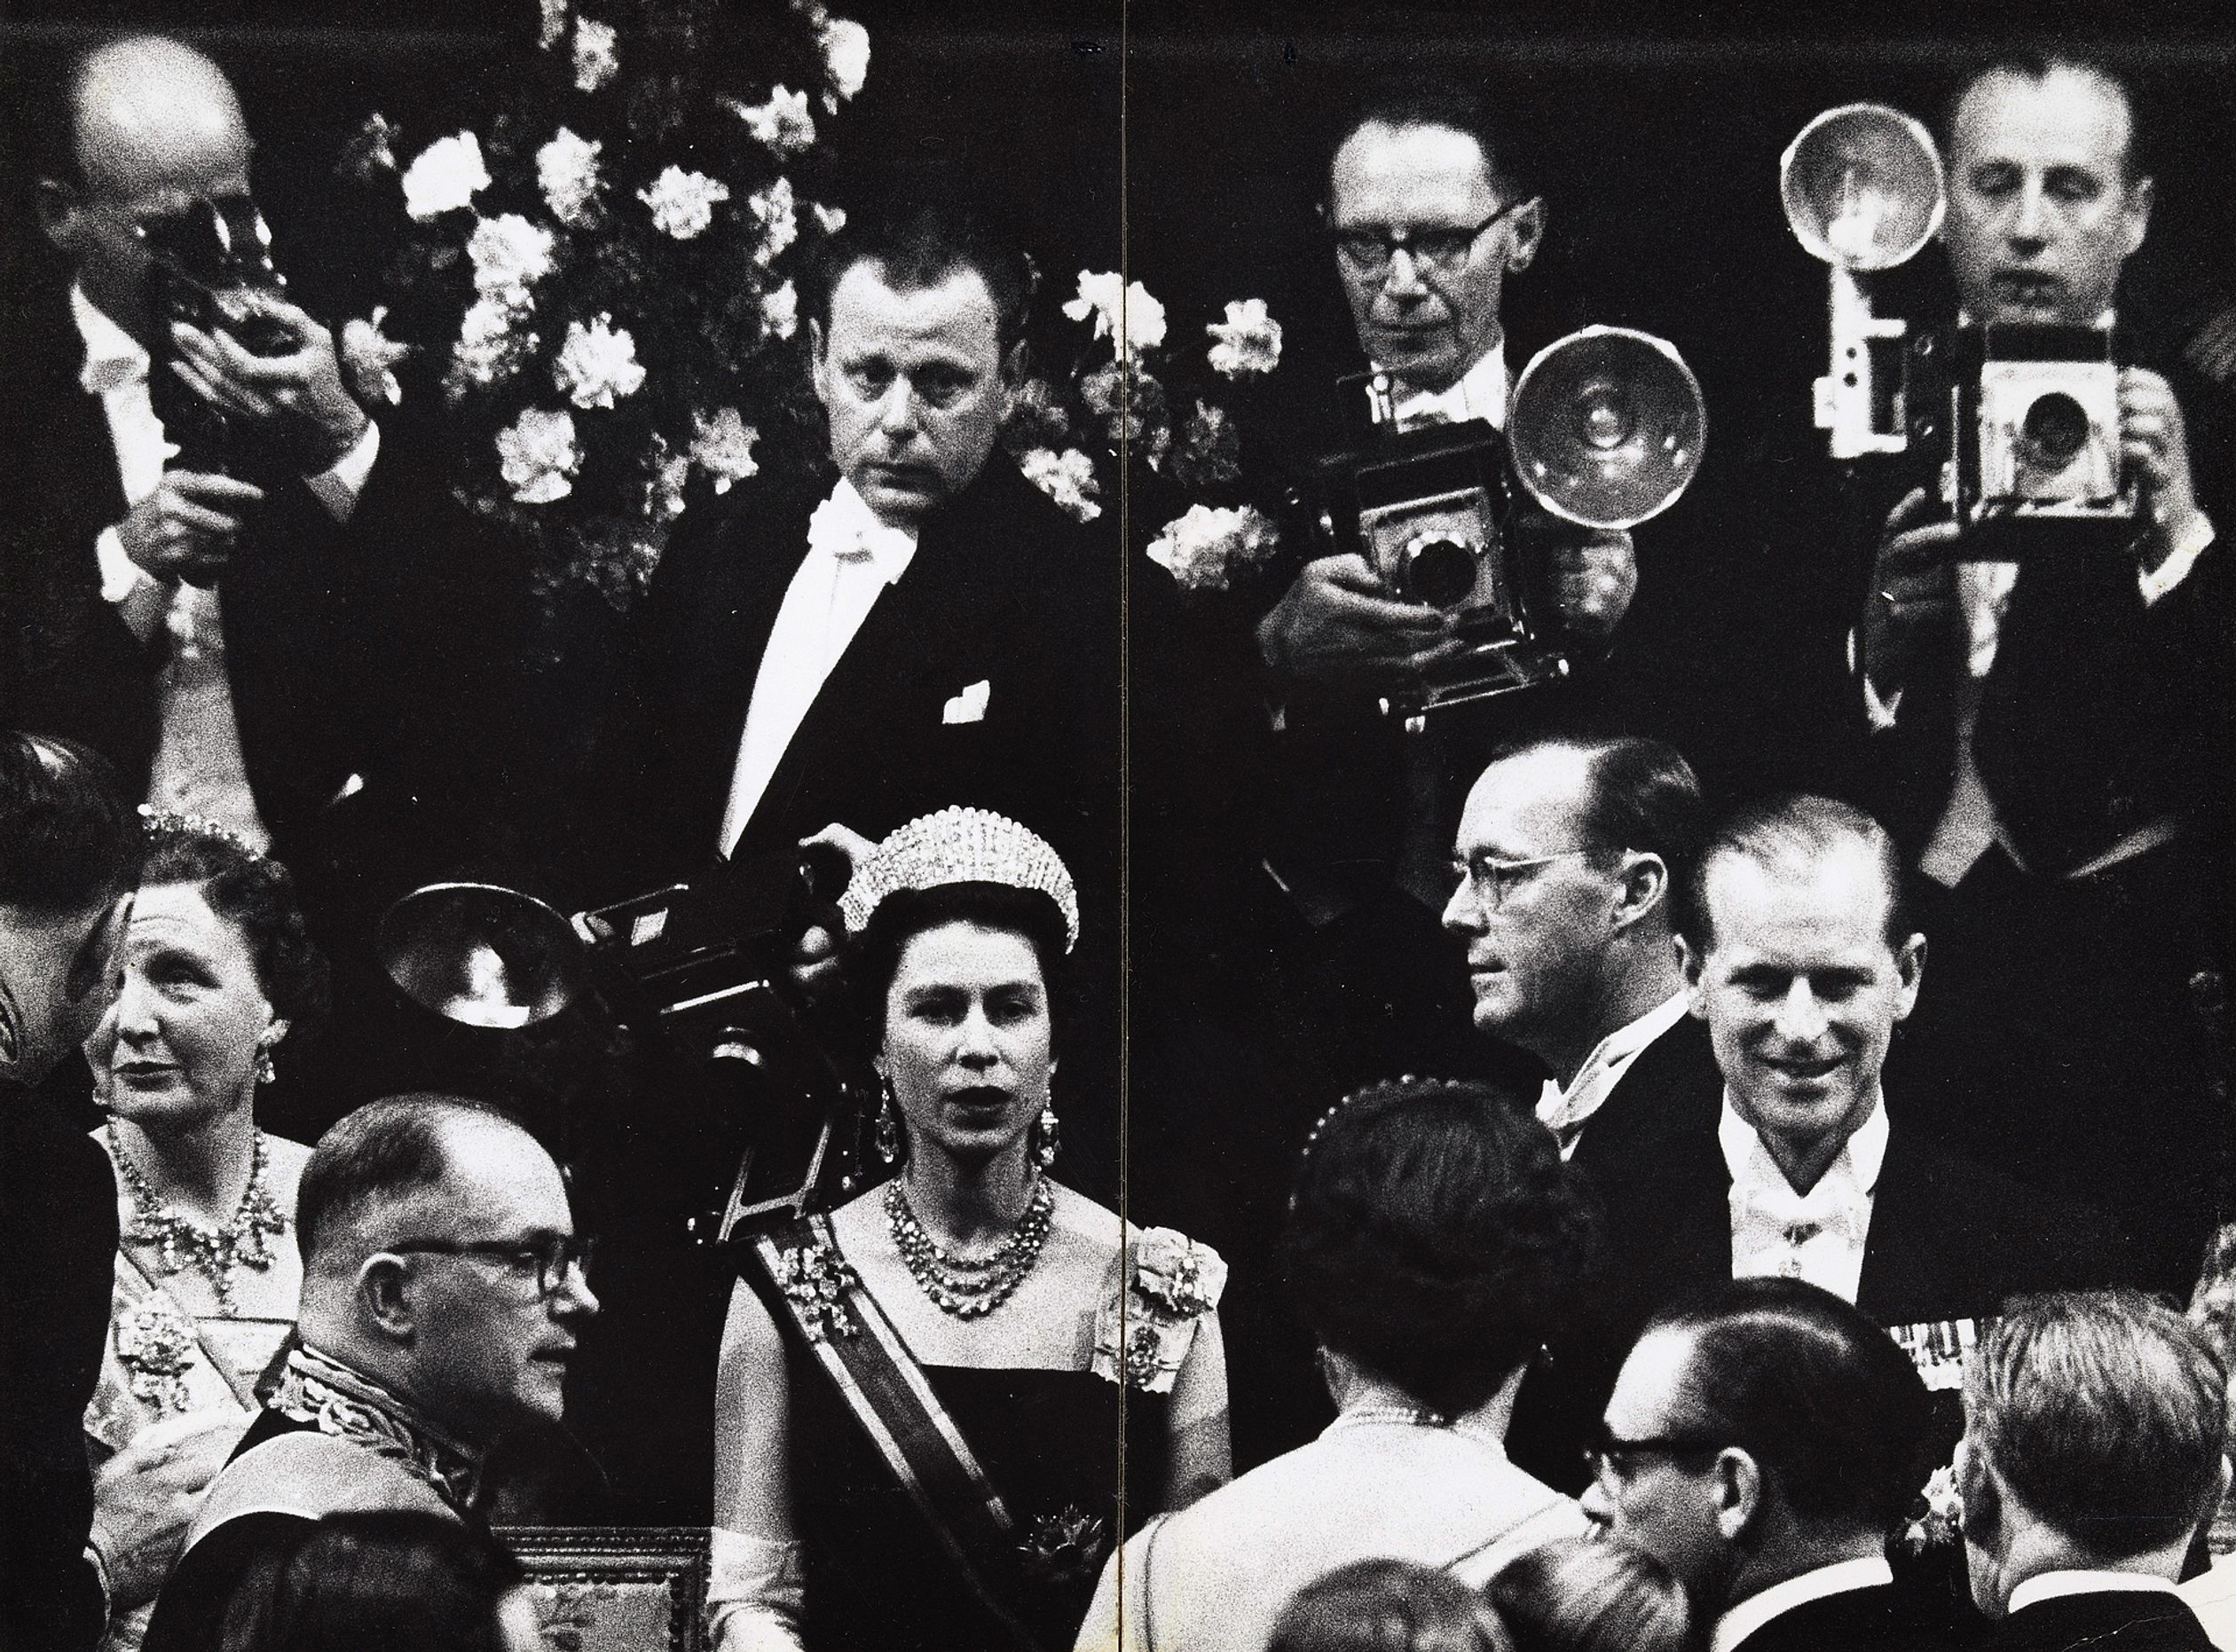 Een recent gevonden foto van Elizabeth en Philip vanuit 1958 op een staatsbezoek in Nederland. Het